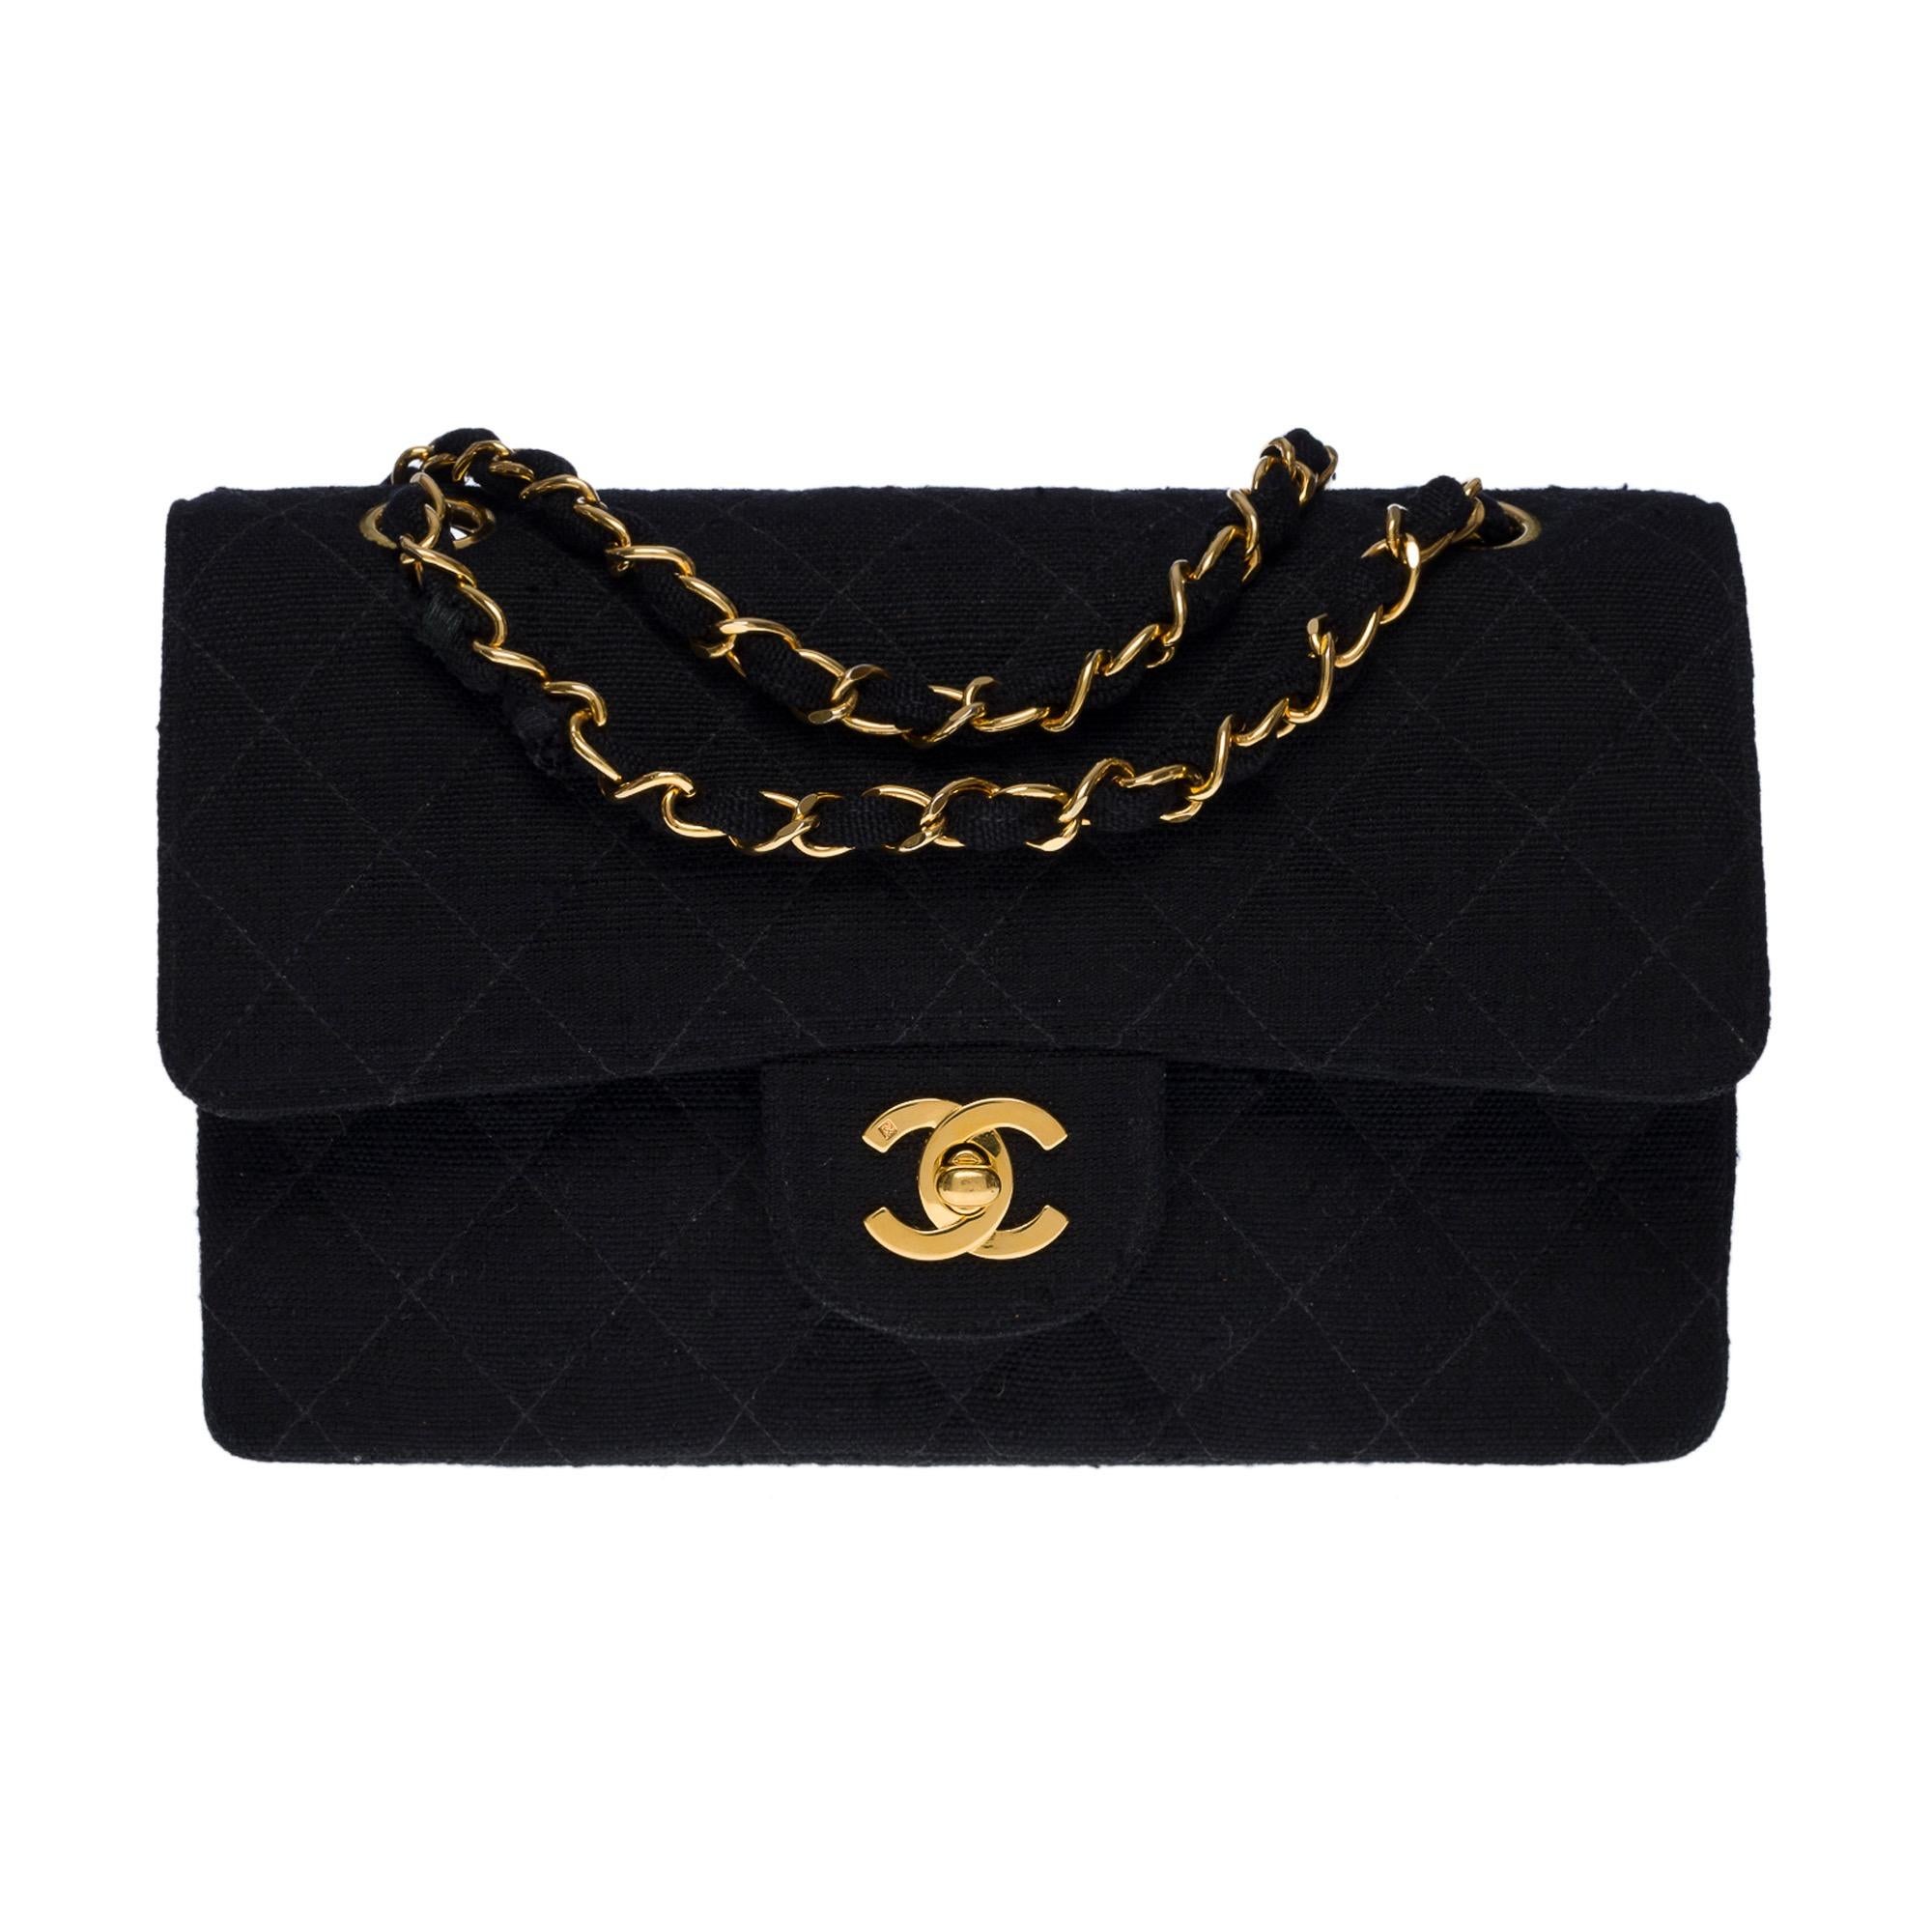 Die begehrte Chanel Timeless 23 cm Tasche mit doppeltem Überschlag aus schwarzem Leinen, vergoldeten Metallbeschlägen, einem Henkel aus vergoldeter Metallkette, der mit schwarzem Leinen für eine Schulter und einem Schulterriemen verflochten